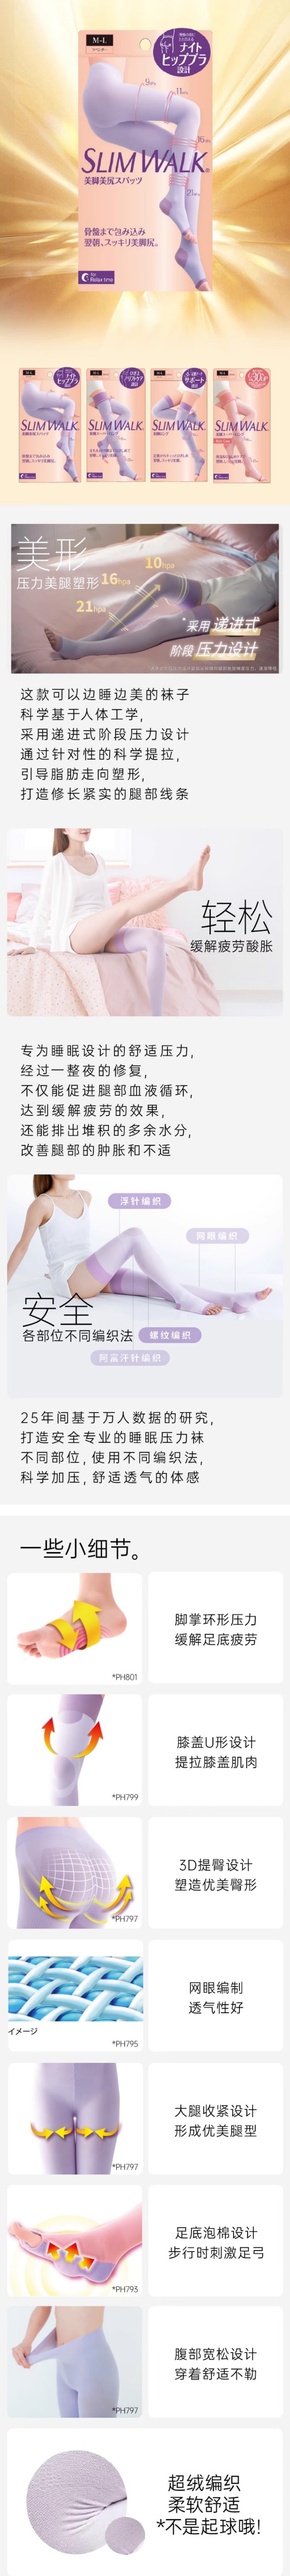 【日本直效郵件】SLIM WALK 4段壓力美腿美臀睡眠褲壓力襪 M-L